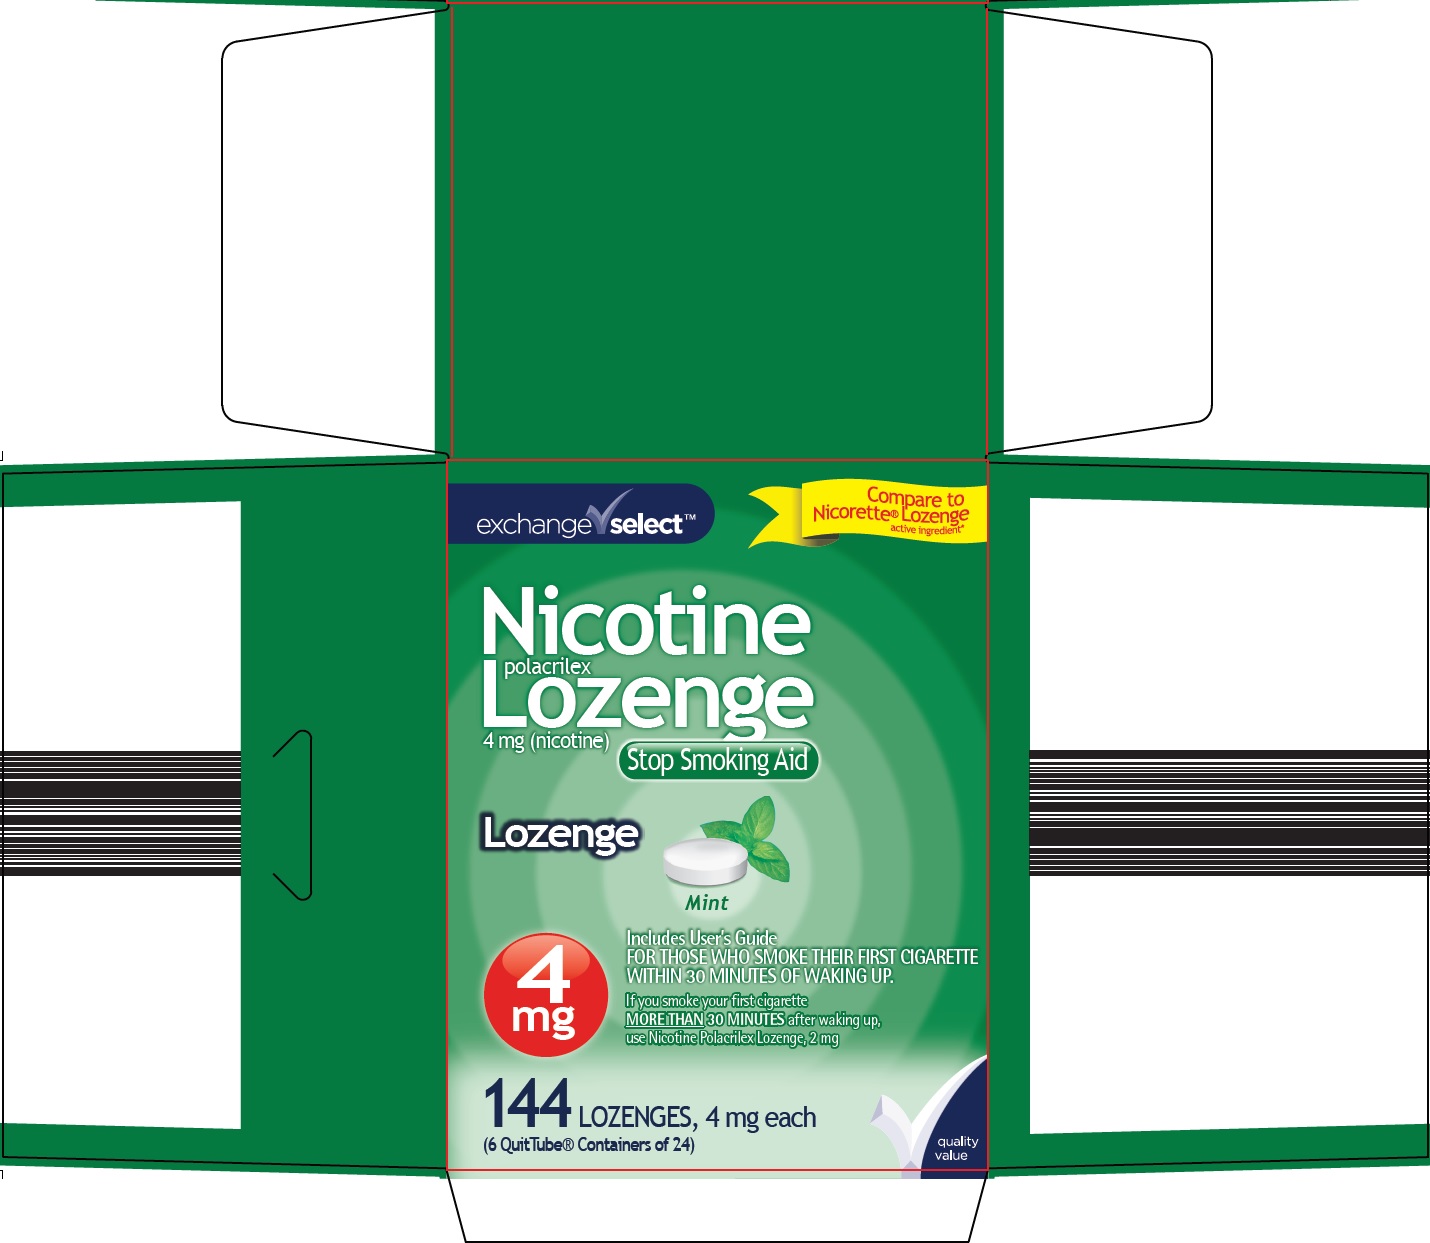 873-cz-nicotine-lozenge-1